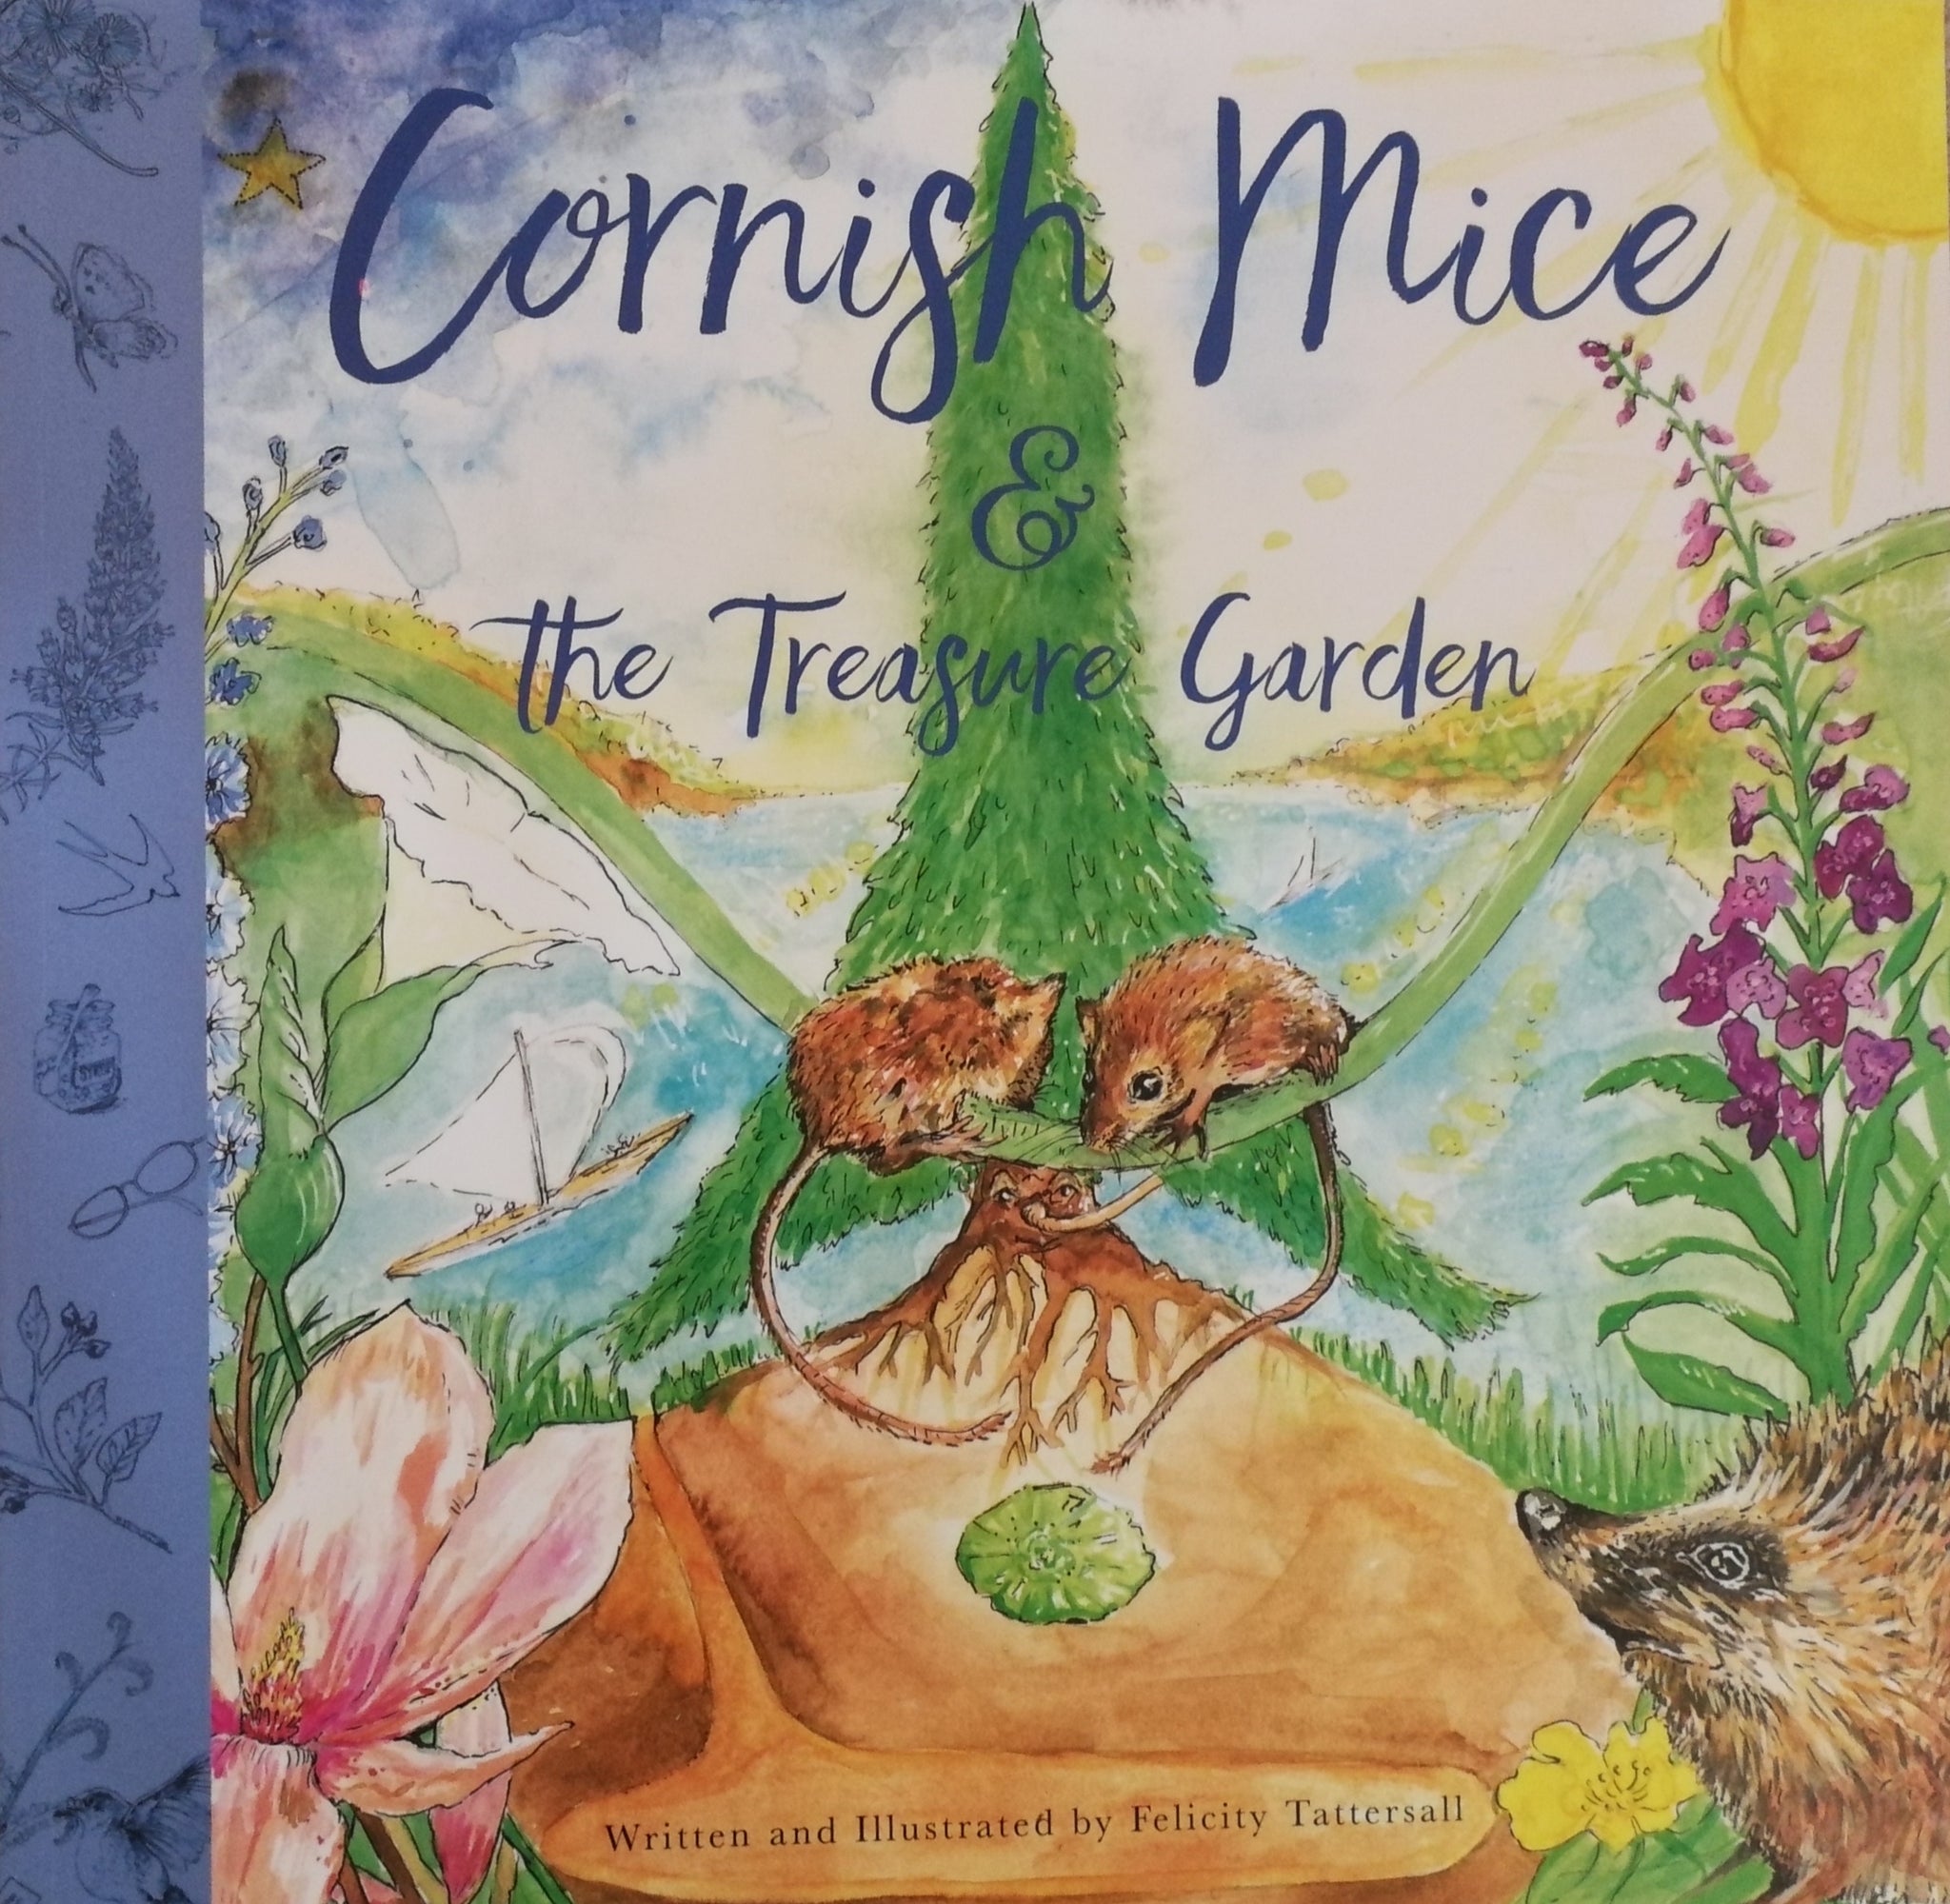 Cornish Mice & the Treasure Garden